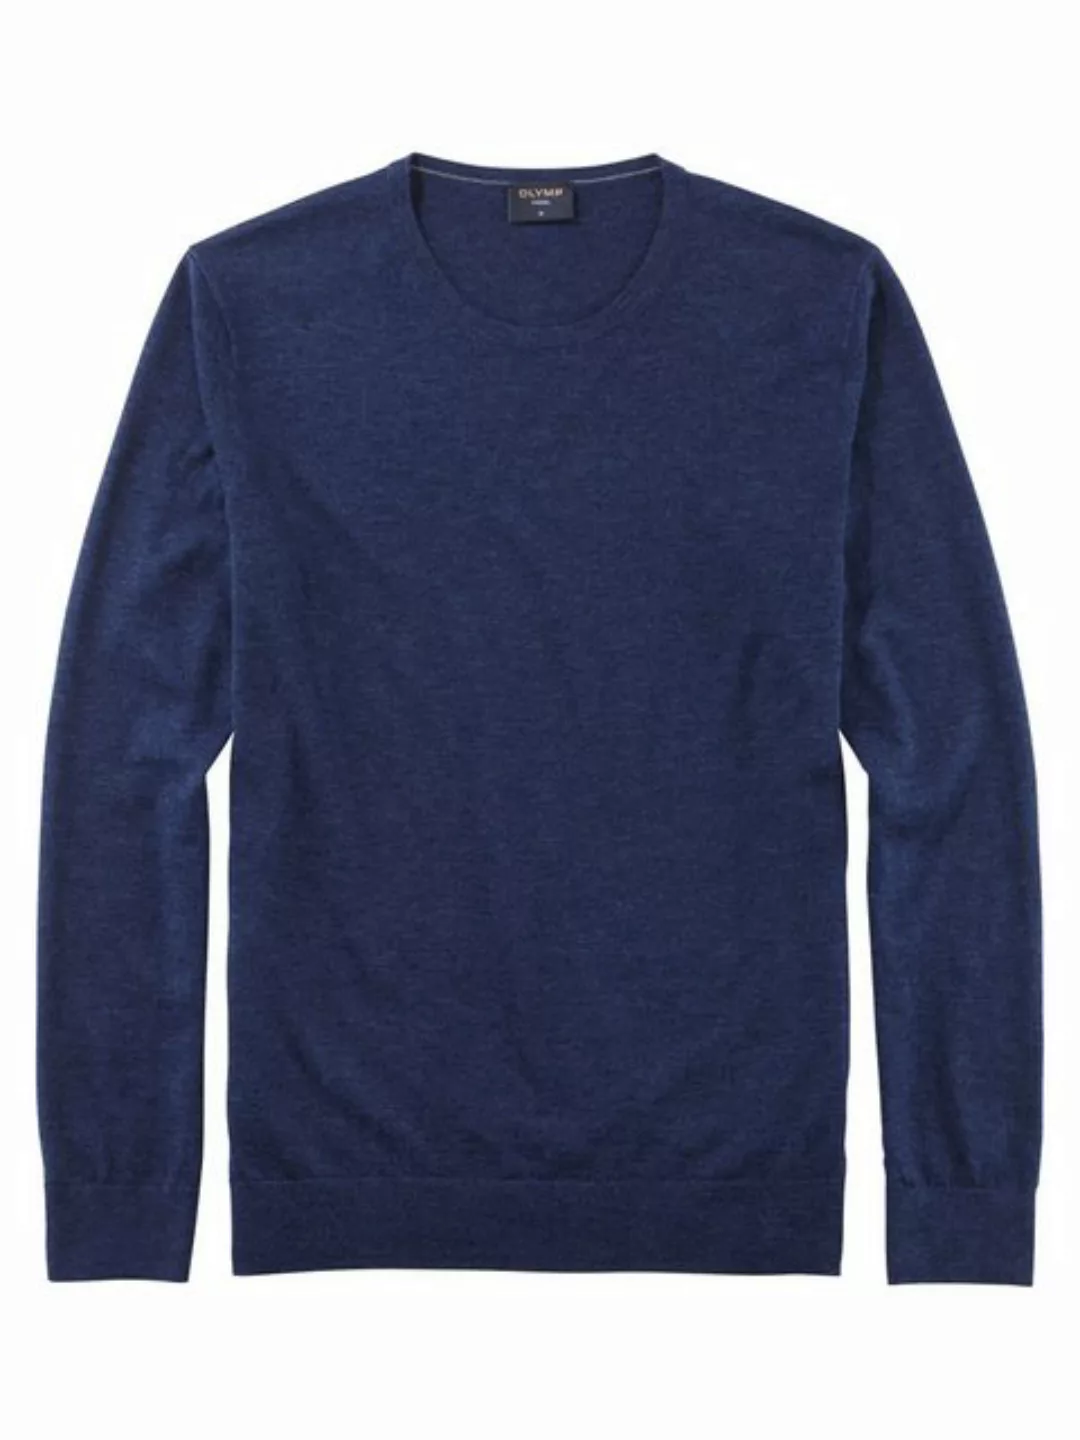 OLYMP Pullover 0151/11/19 günstig online kaufen